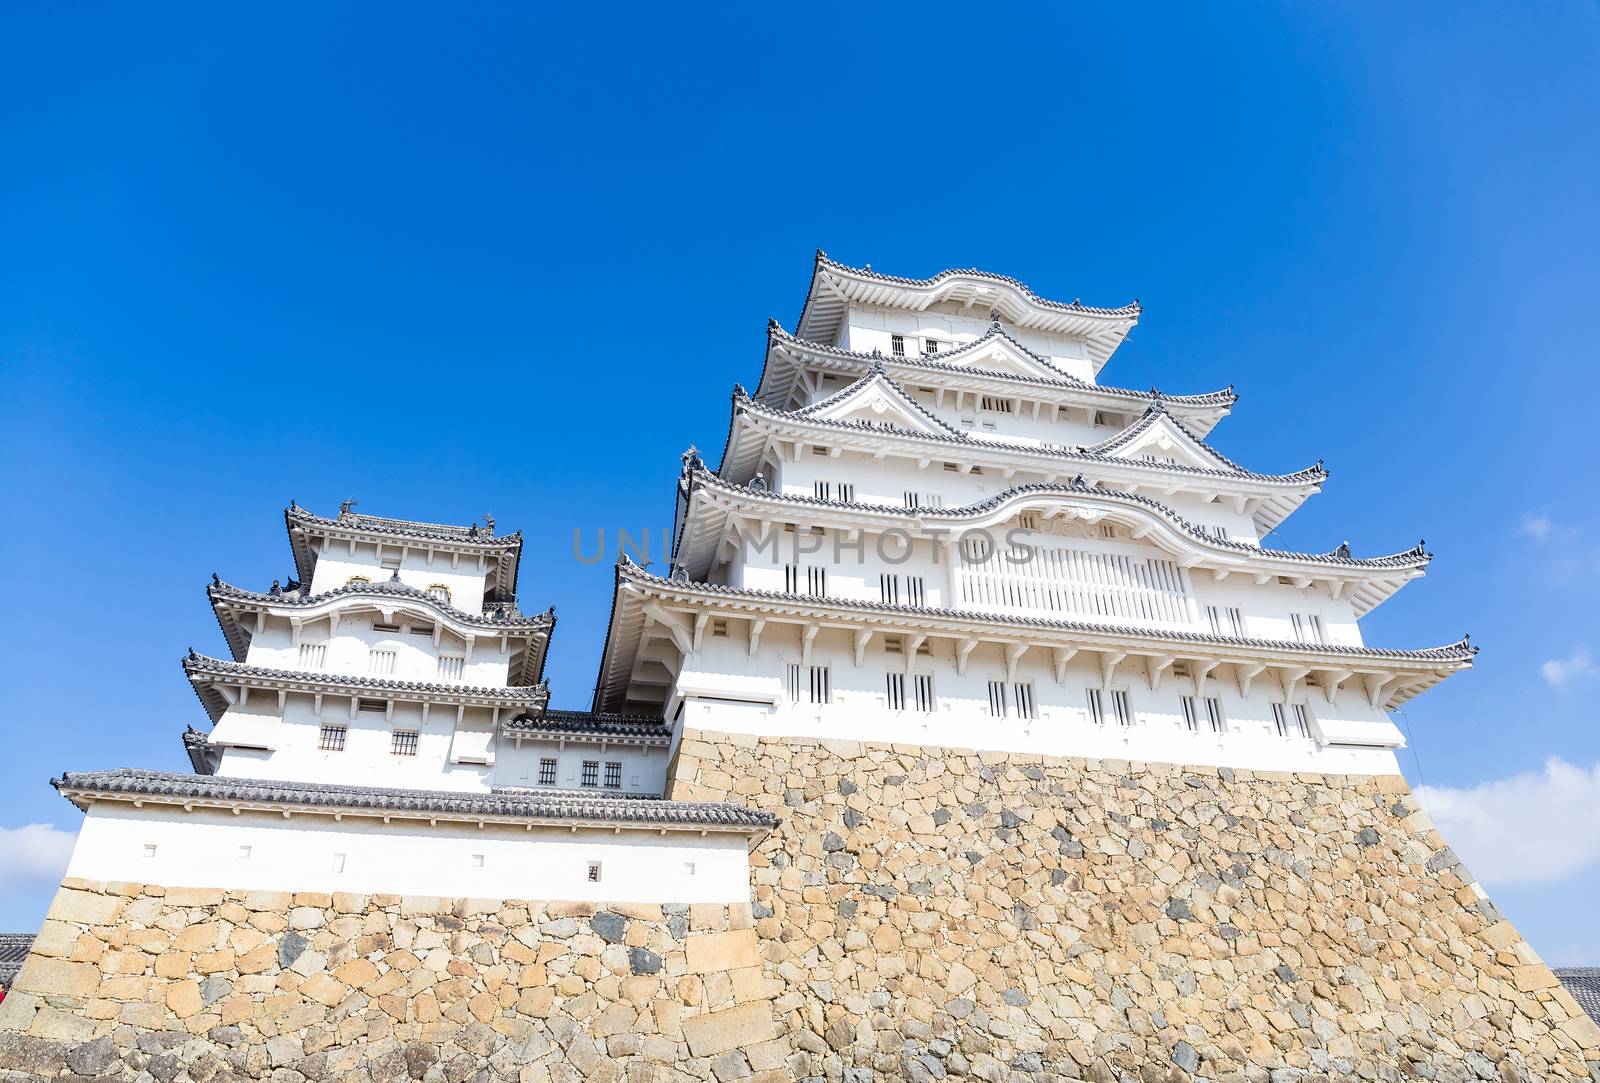 Himeji Castle in Japan by leungchopan